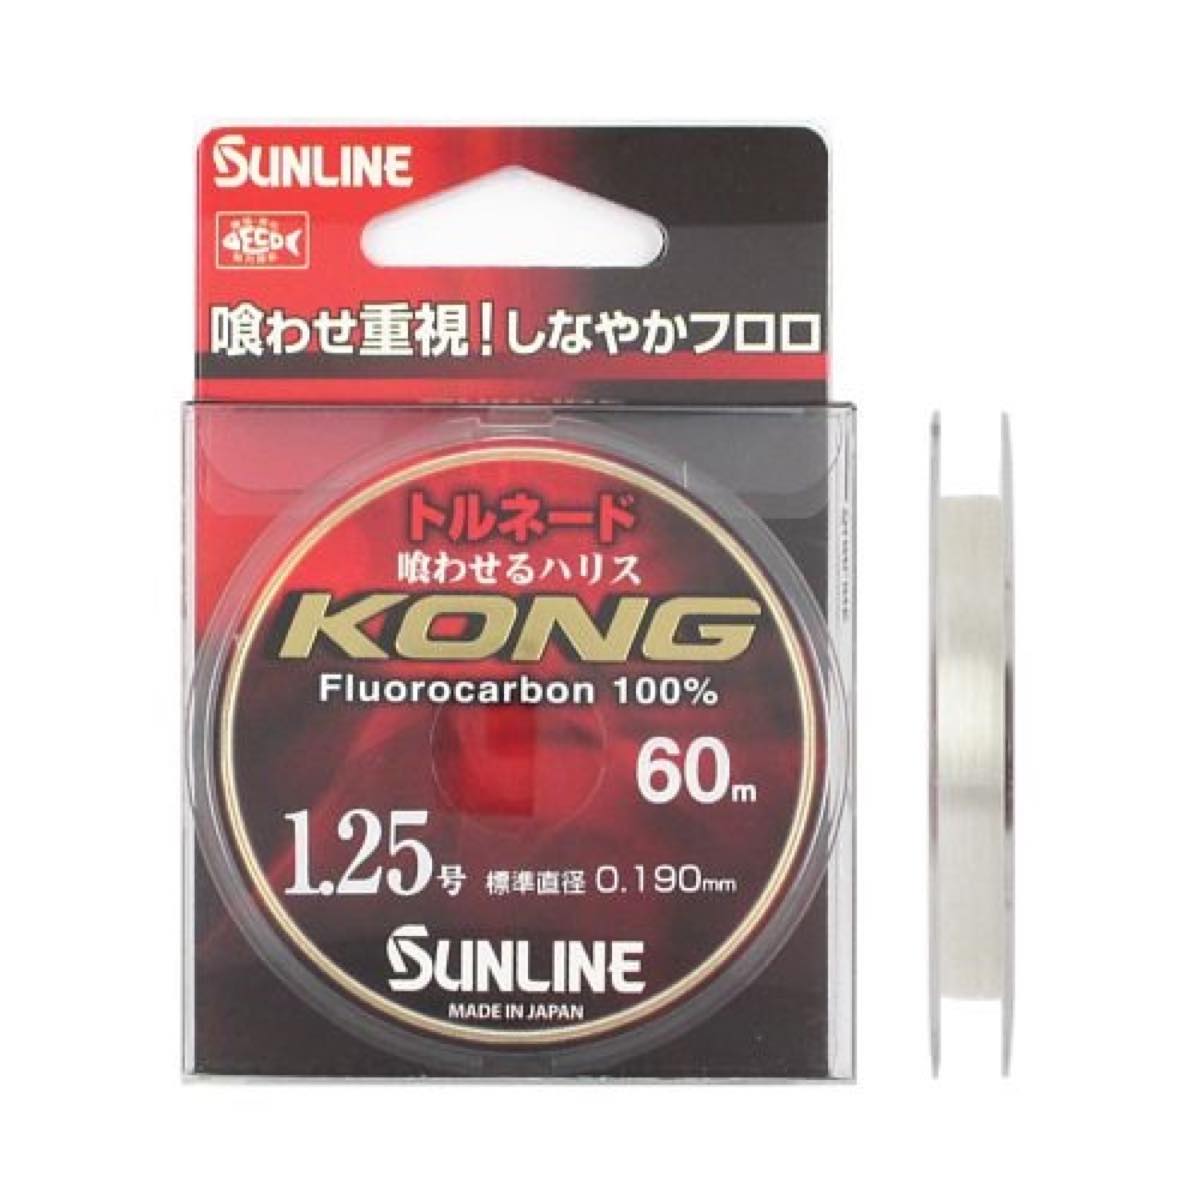 サンライン(SUNLINE) トルネード KONG 60m 1.25号 ナチュラルクリア 